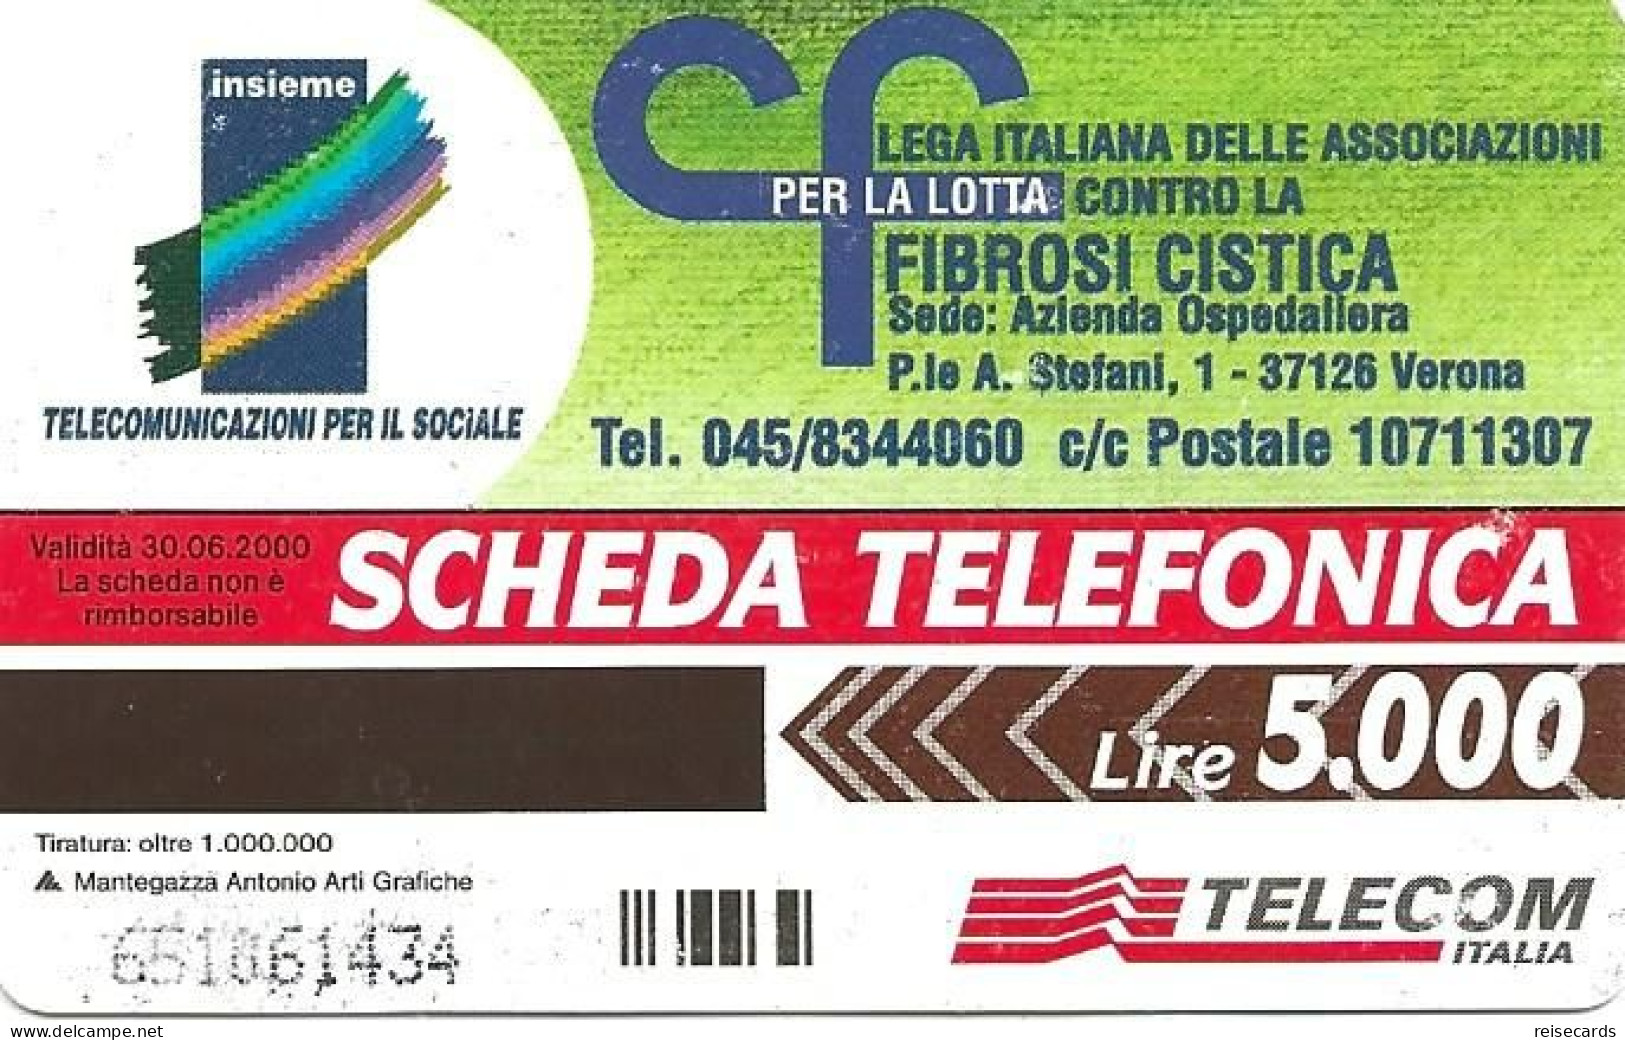 Italy: Telecom Italia - Fibrosi Cistica - Öff. Werbe-TK